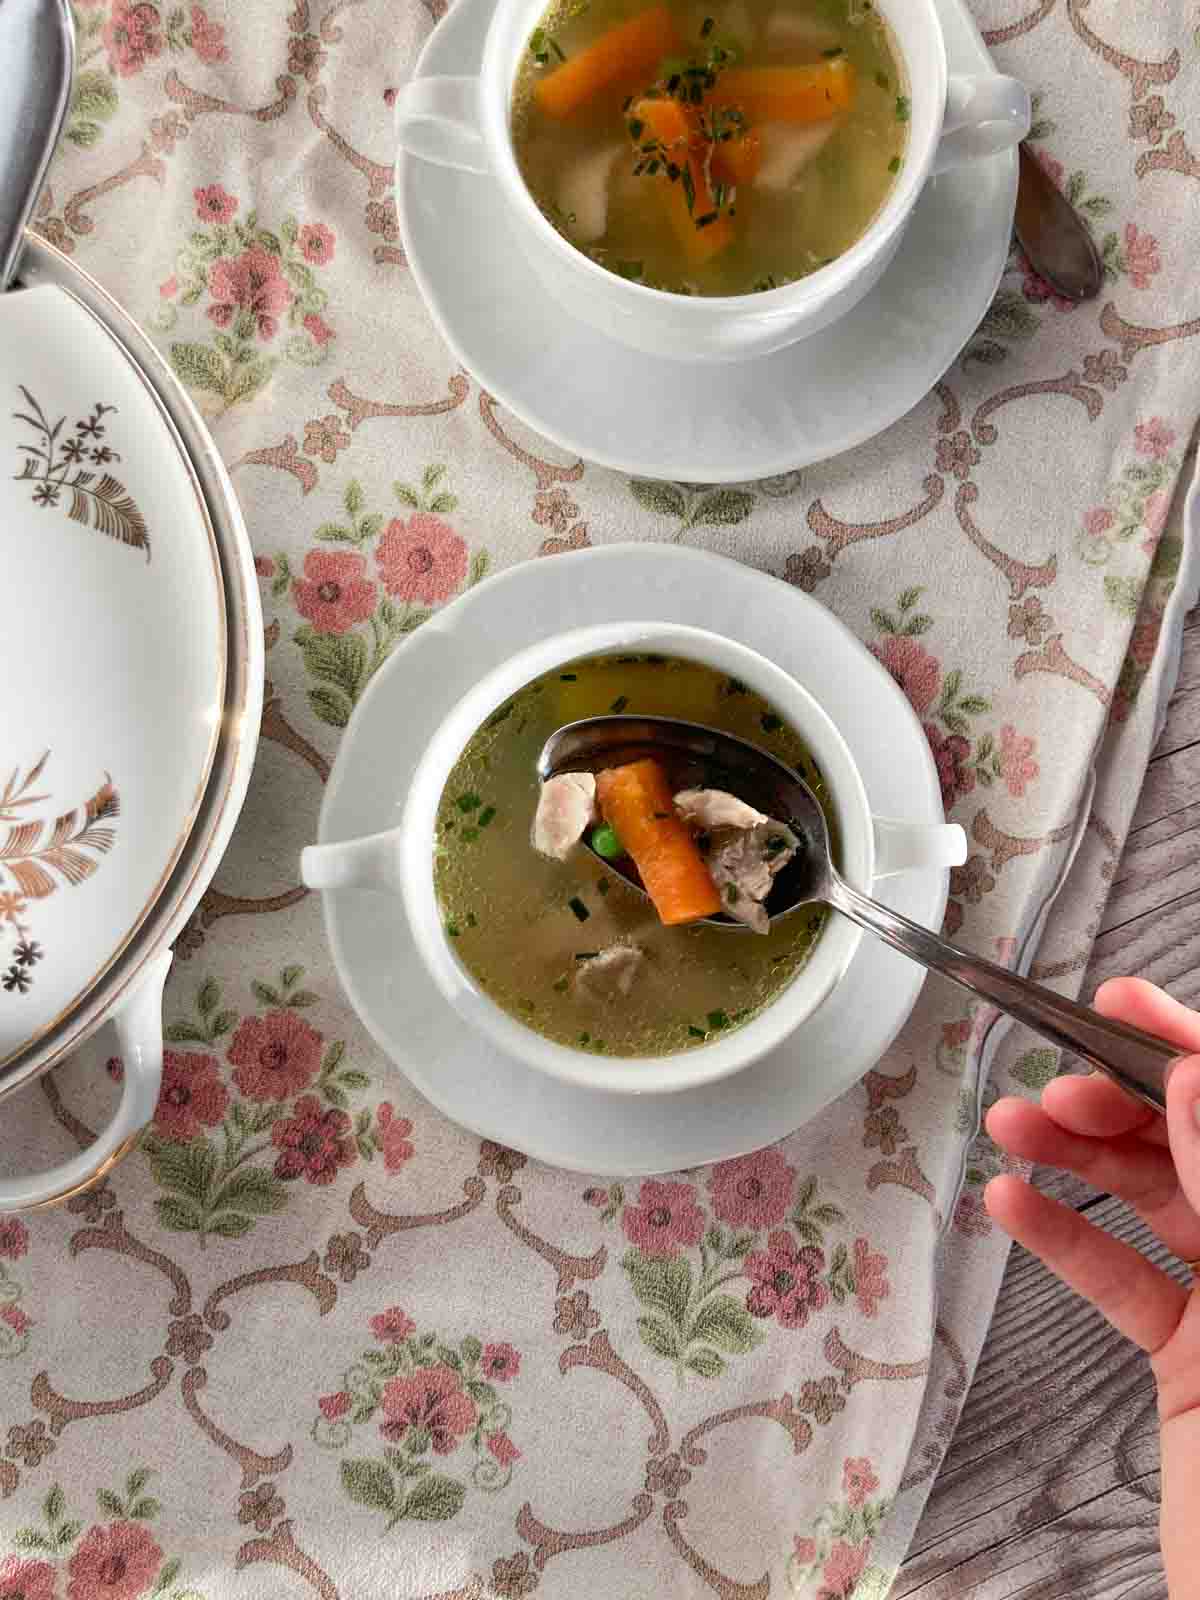 Suppentasse mit Untertasse, gefüllt mit Hühnersuppe, auf rosa geblümtem Tischtuch - easy chicken soup recipe, served in a white soup bowl on a pink flowered table cloth.